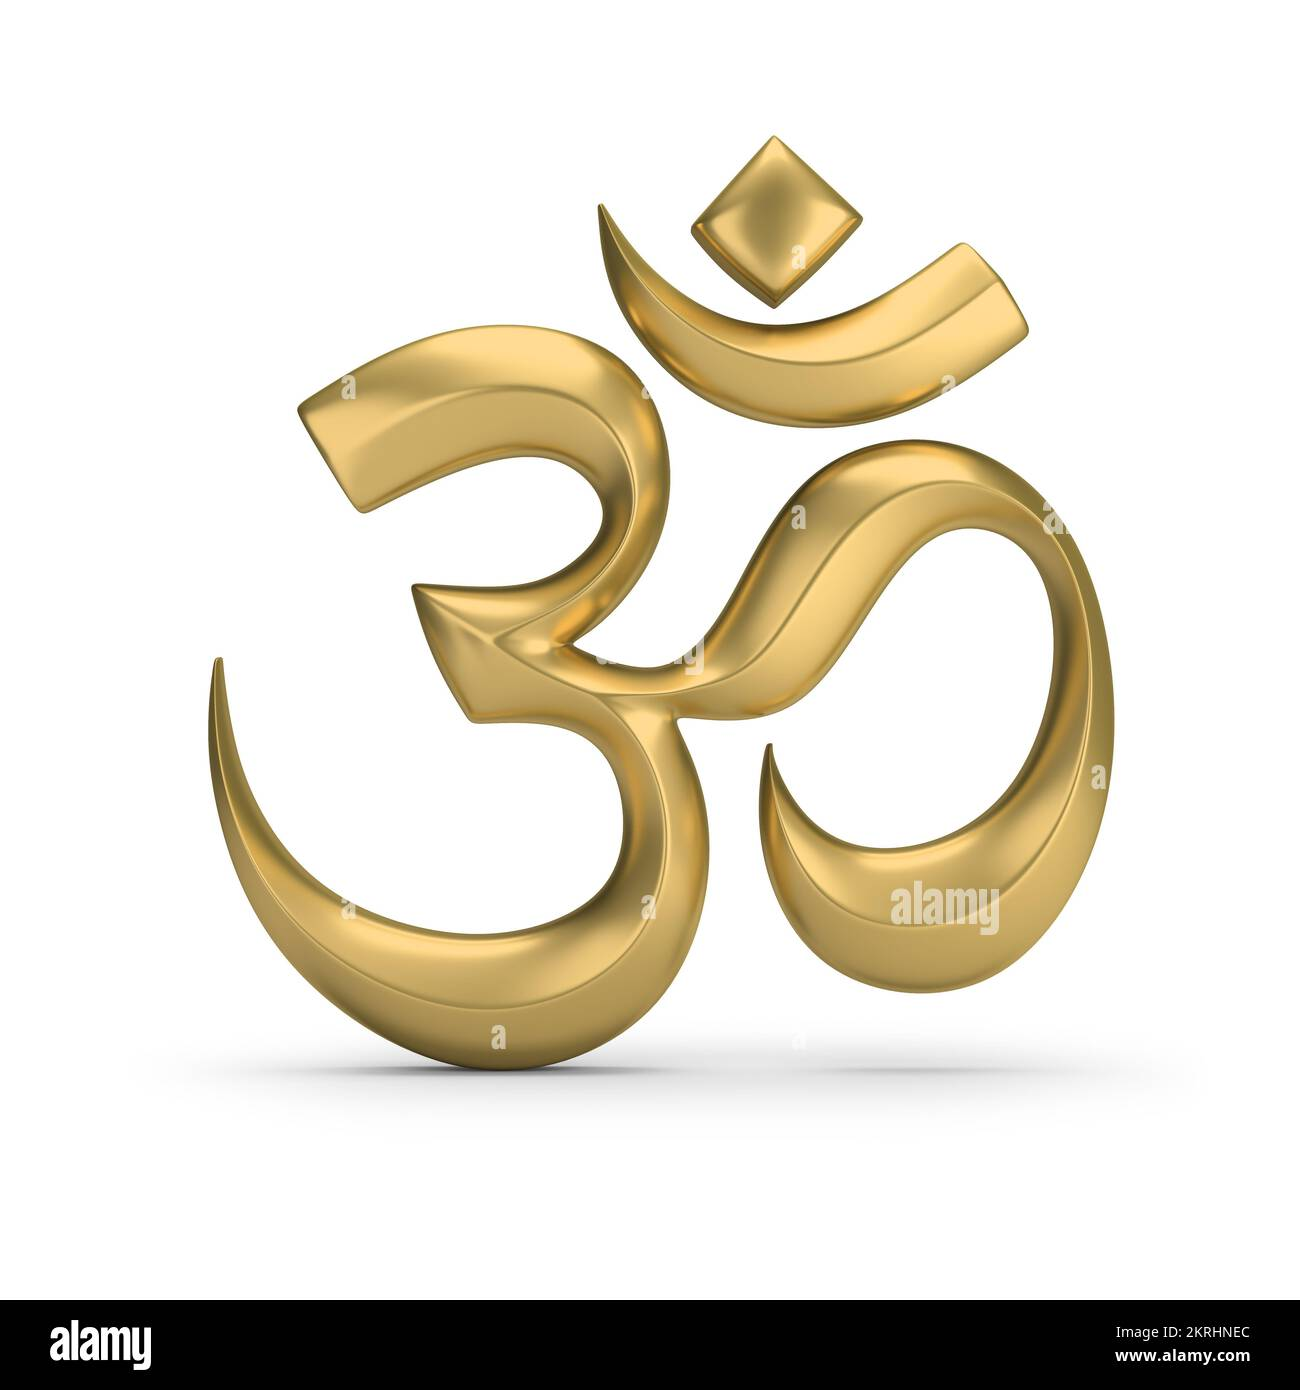 Los misterios detrás de los símbolos sagrados en la religión hindú